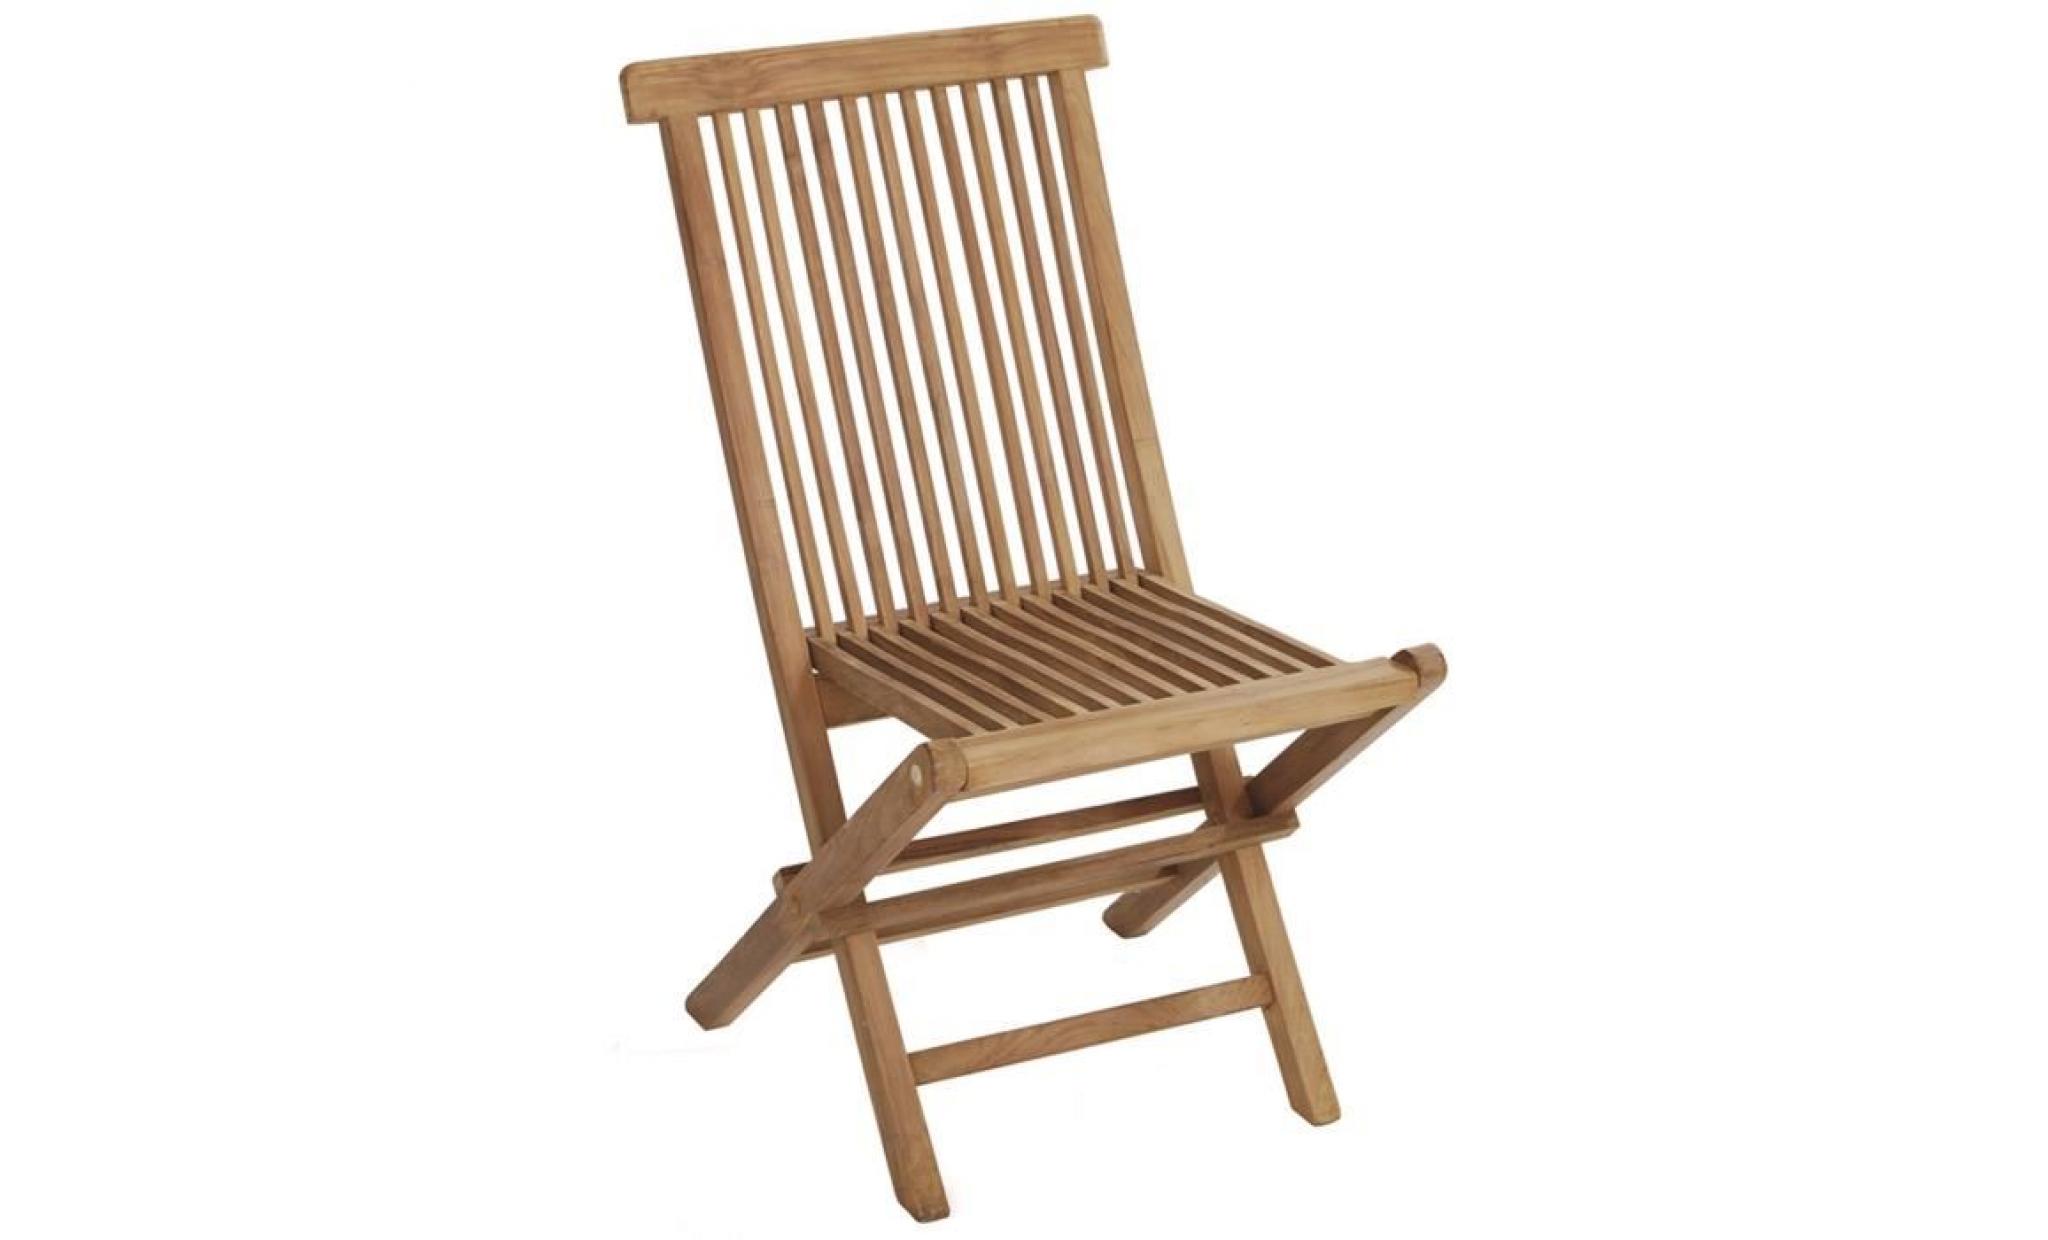 Chaise pliante pour jardin en bois teck, coloris naturel - Dim : 91 x 46 x 61 cm